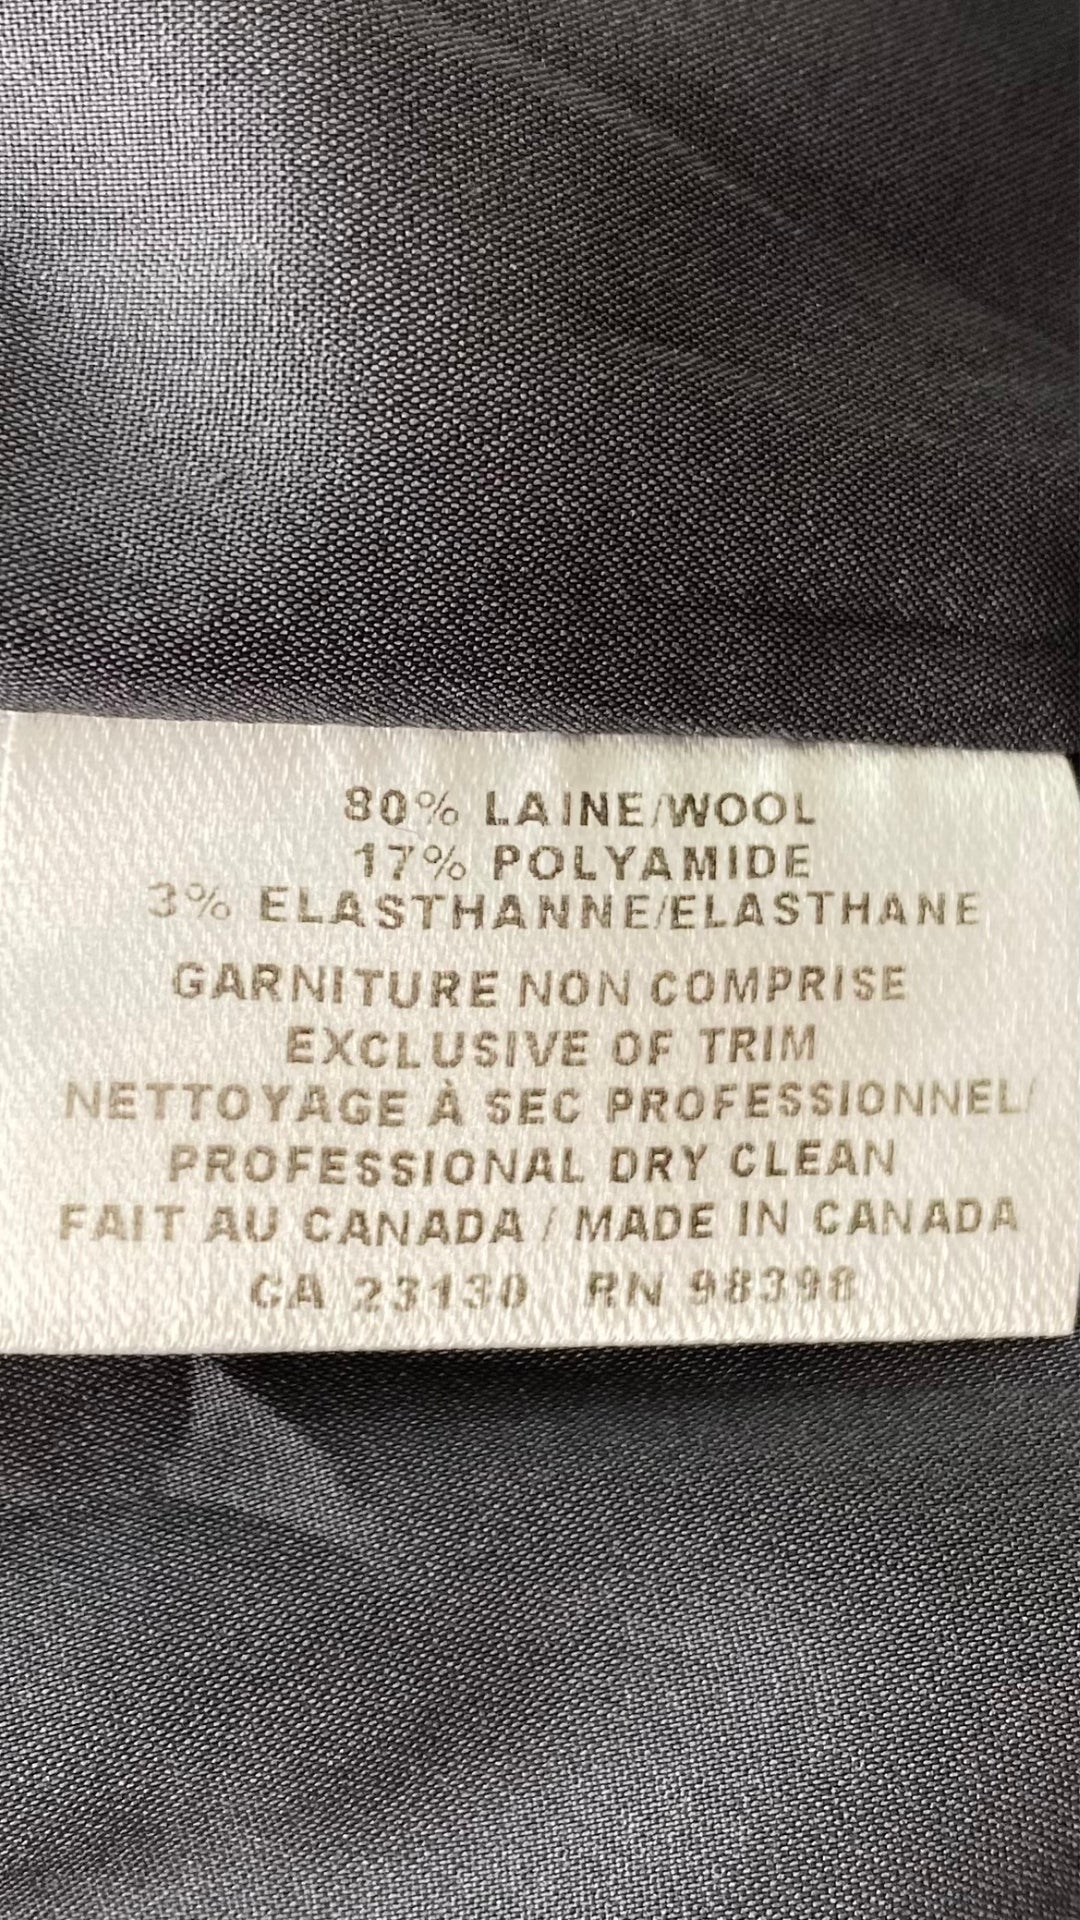 Jupe crayon en lainage gris faite au Canada. Zip au dos pour la fente d'aisance. Vue de l'étiquette de composition et entretien.